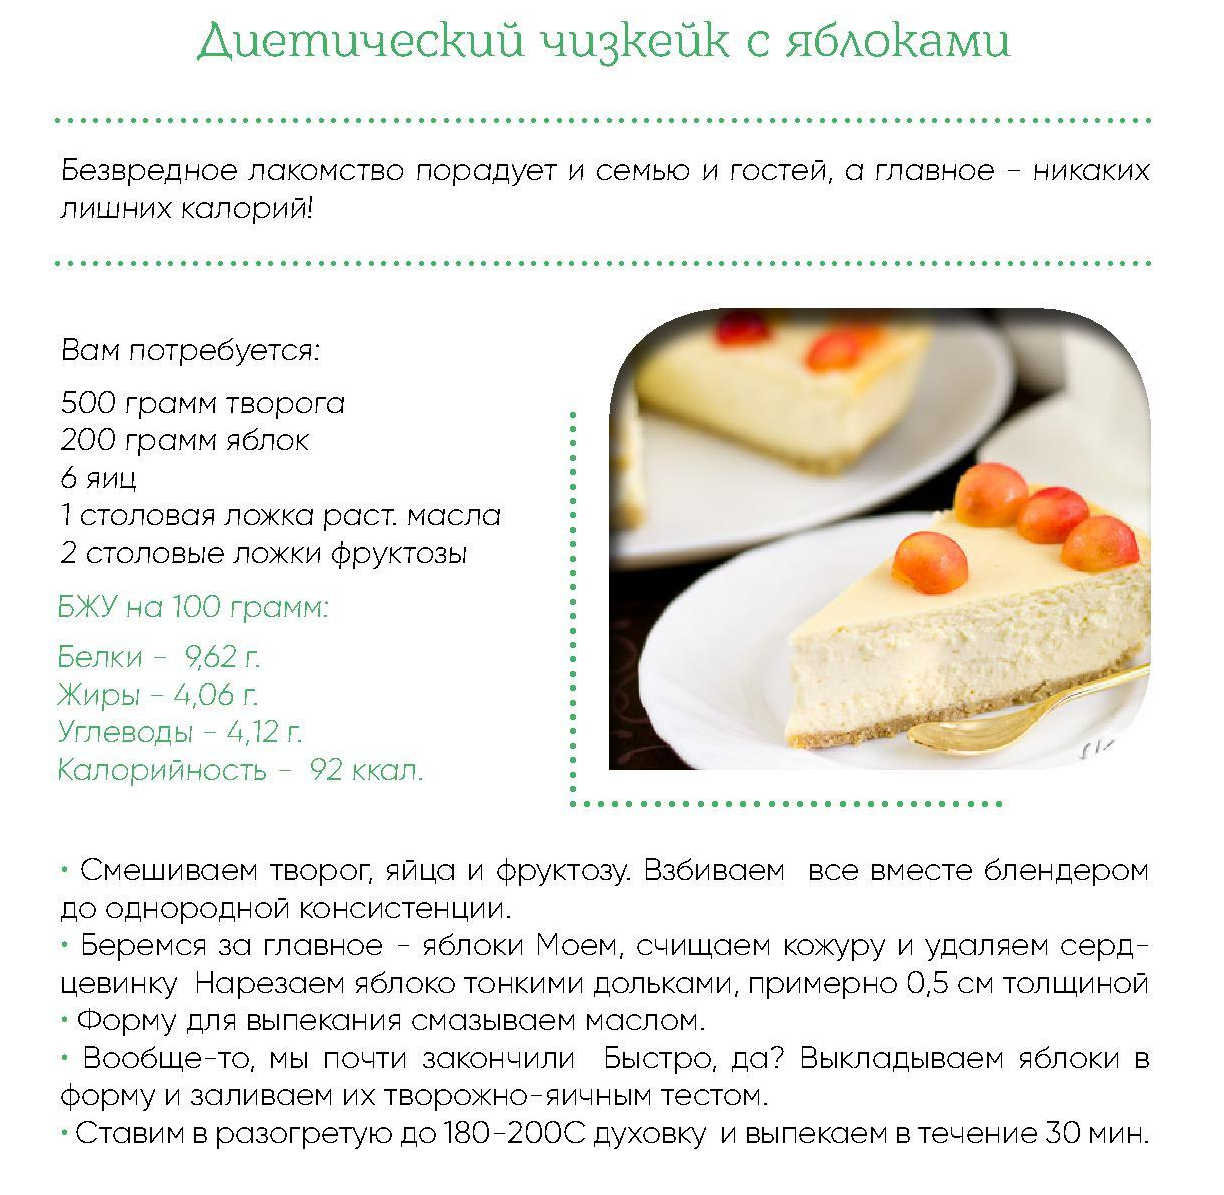 Низкокалорийные десерты: рецепты приготовления в домашних условиях